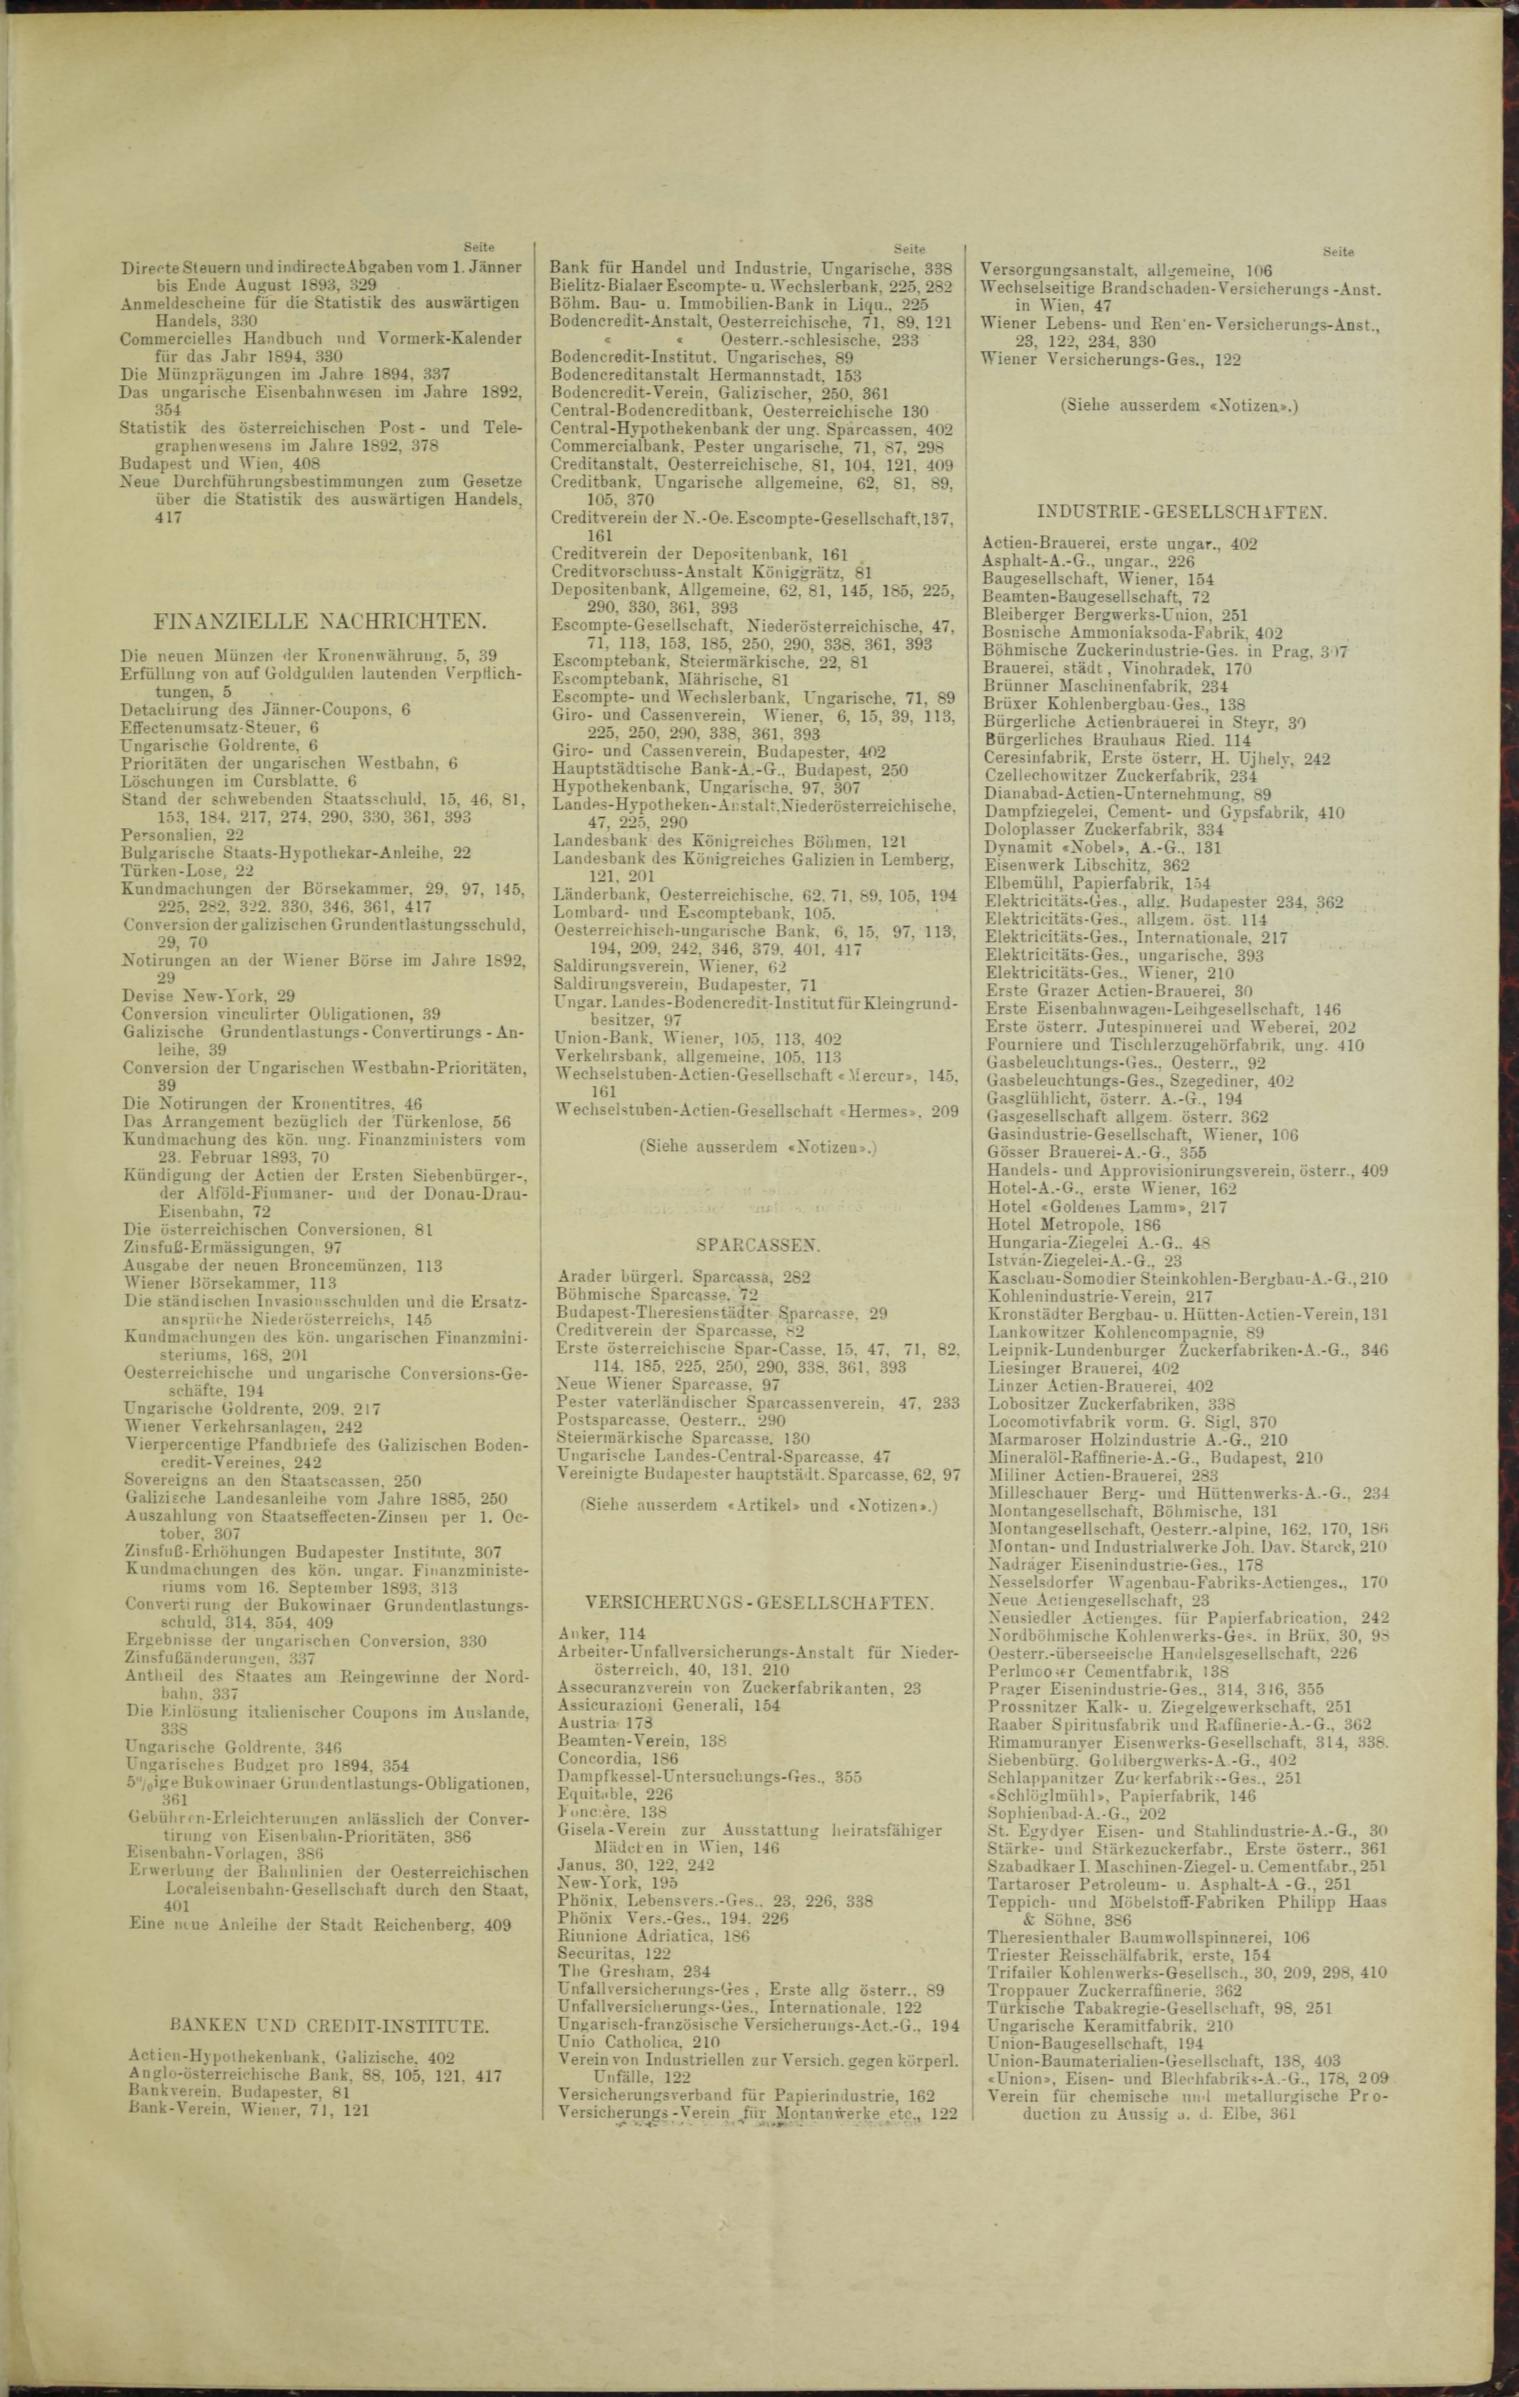 Der Tresor 09.03.1893 - Seite 11